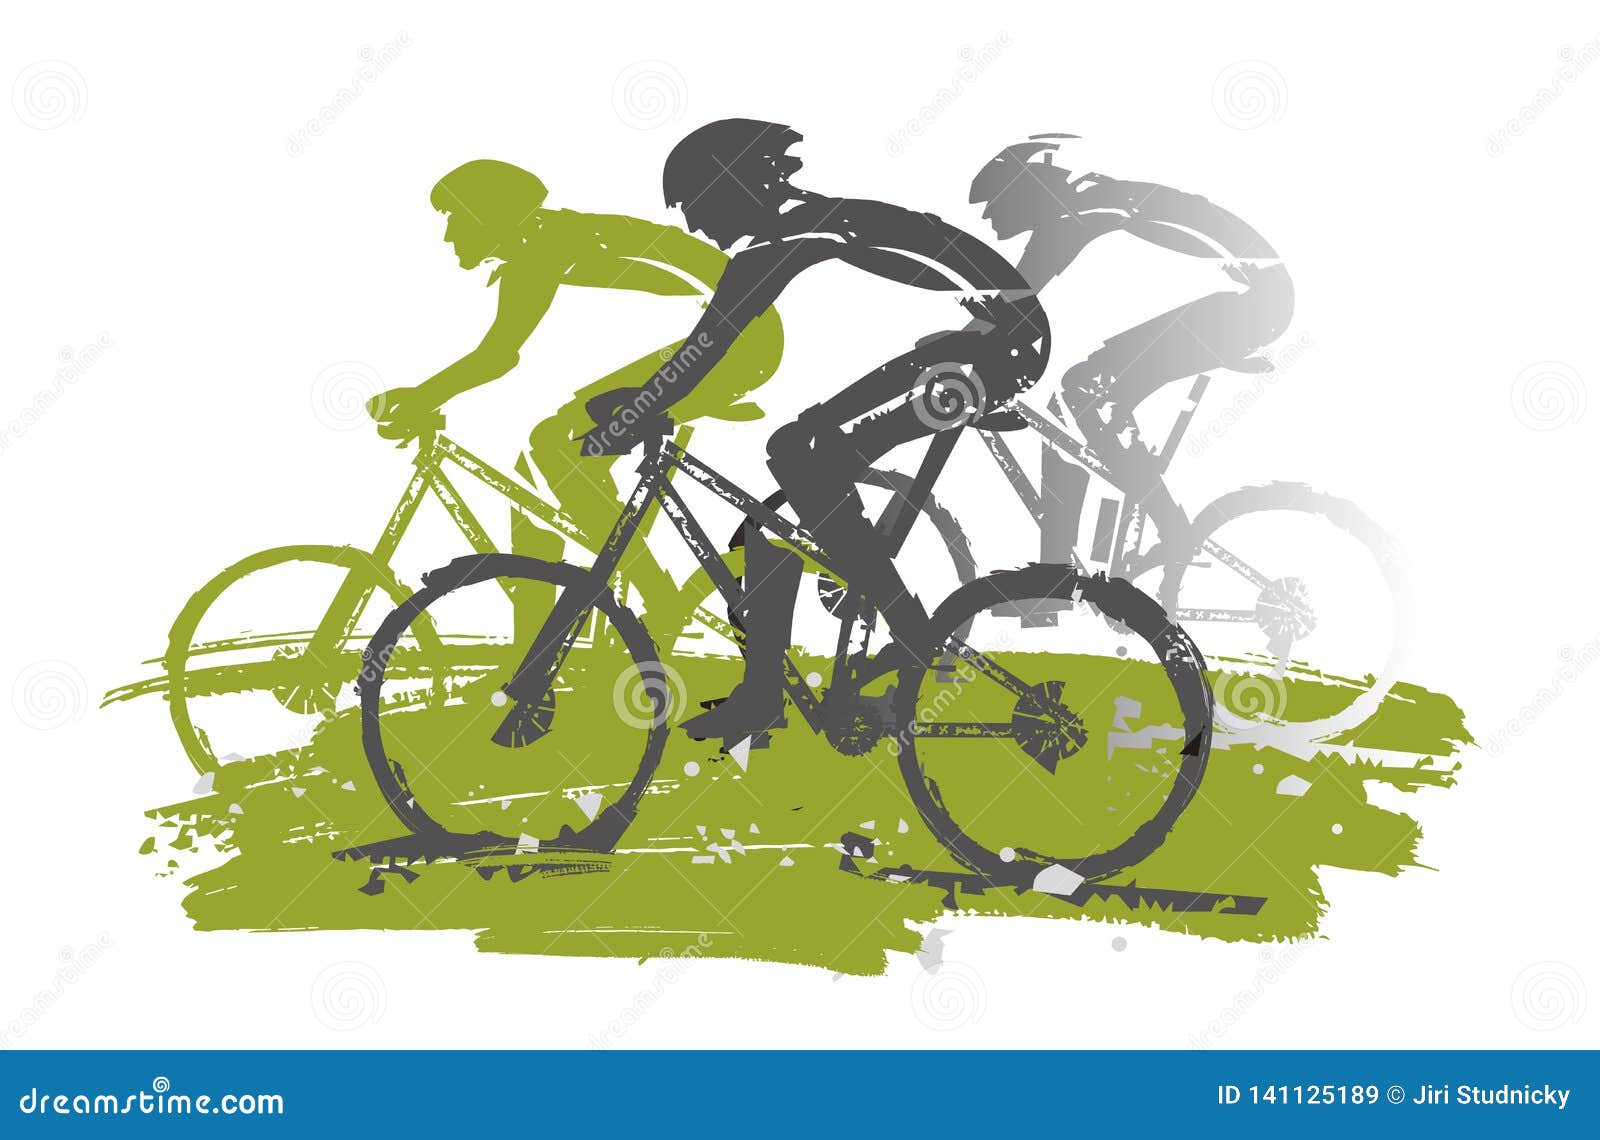 Coperta Da Parete Arazzo,Ciclismo su strada blu geometrico ciclista astratto ciclista veloce ciclo sport,Decorazioni Del Soggiorno Tappetino Da Picnic,40x60 